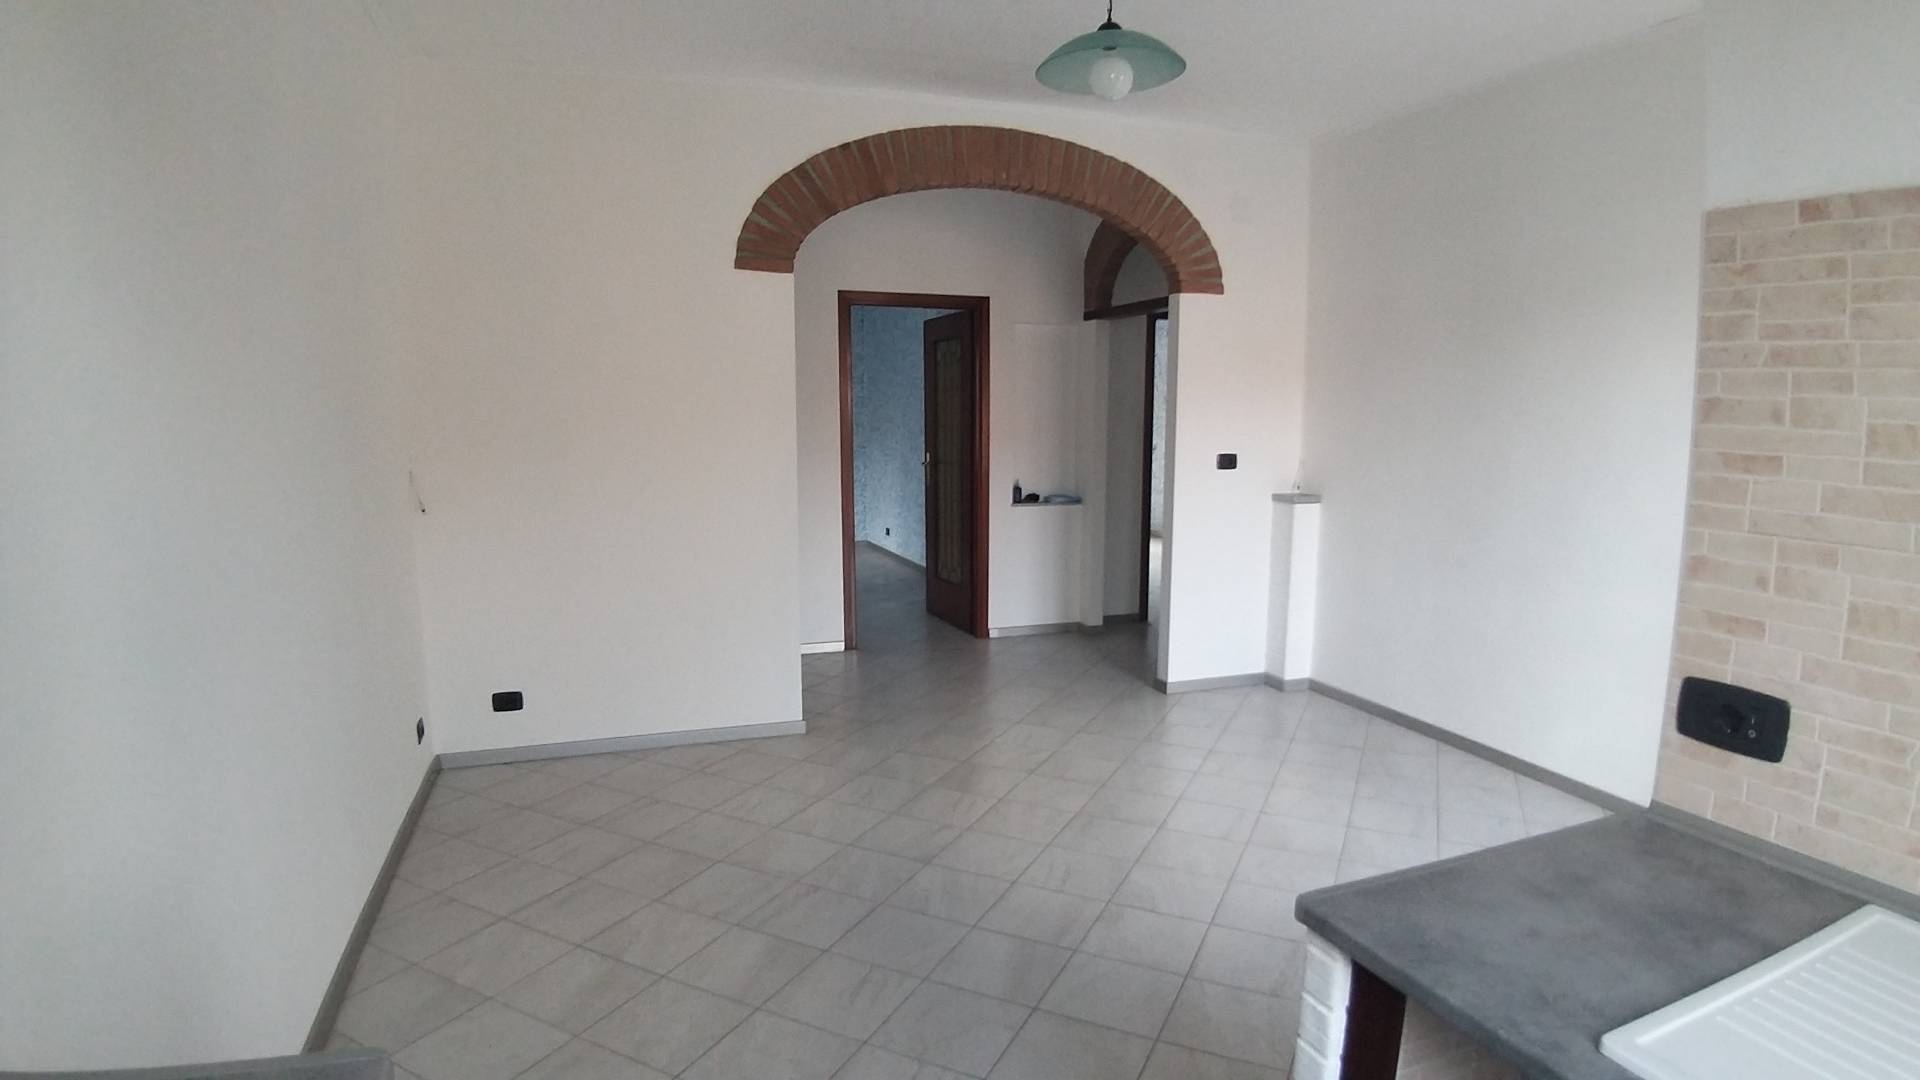 Appartamento in vendita a Moncalieri, 3 locali, prezzo € 120.000 | PortaleAgenzieImmobiliari.it